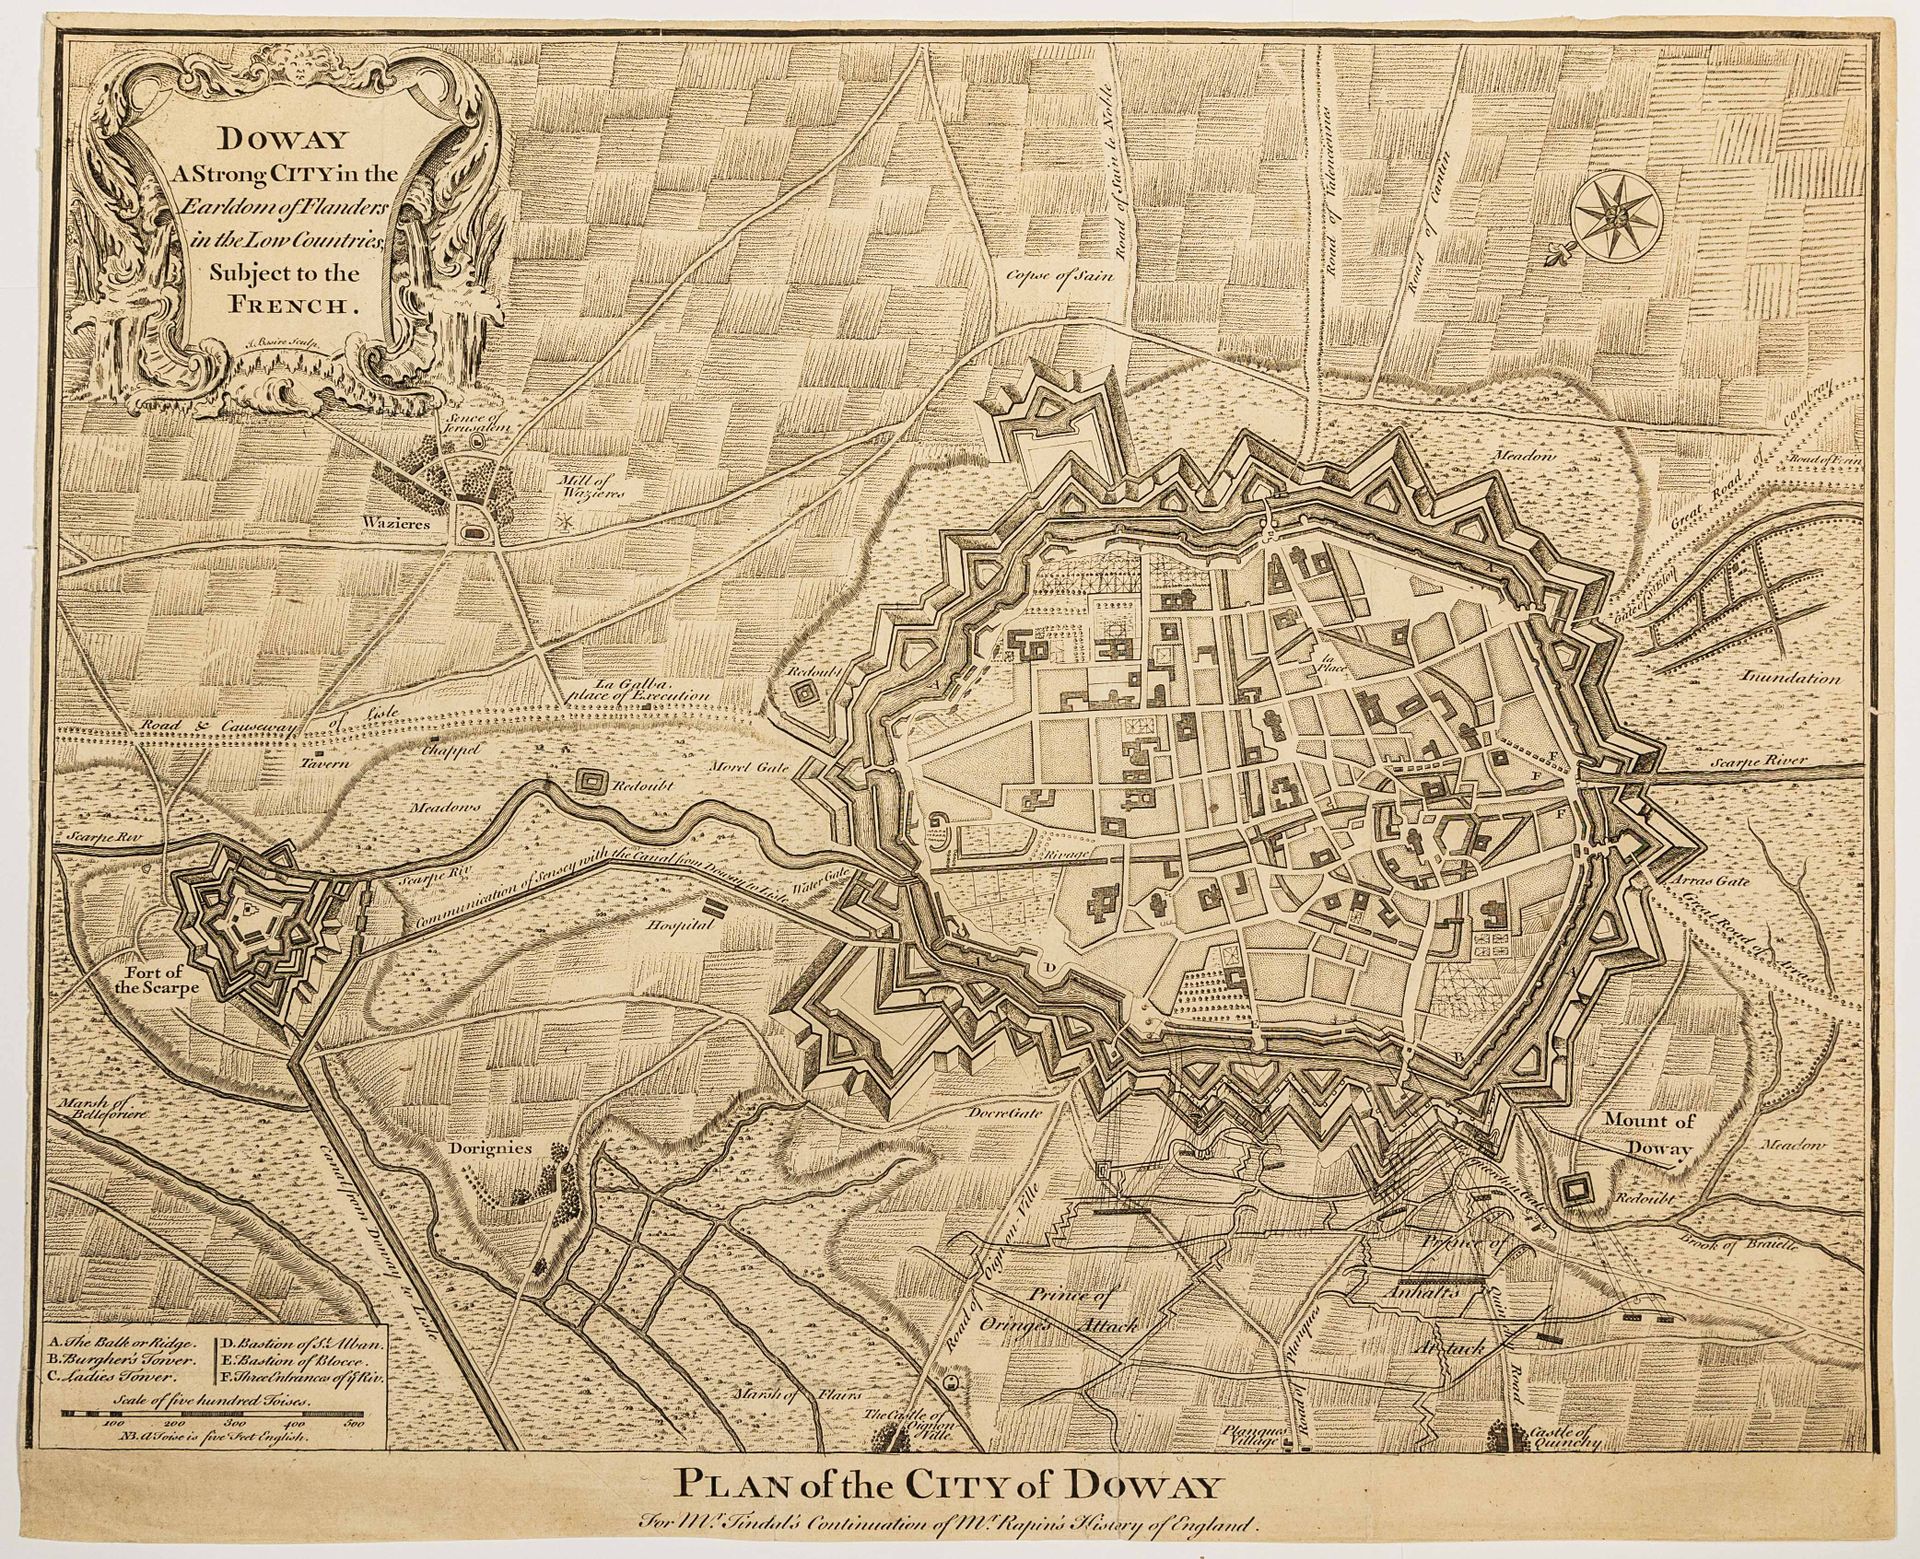 Null 51 - DOUAI。法兰德斯郡杜伊市的规划。英国雕版画 18世纪"DOWAY，低地国家弗兰德斯伯爵区的一座强城，隶属于法国人。"J. Basire &hellip;